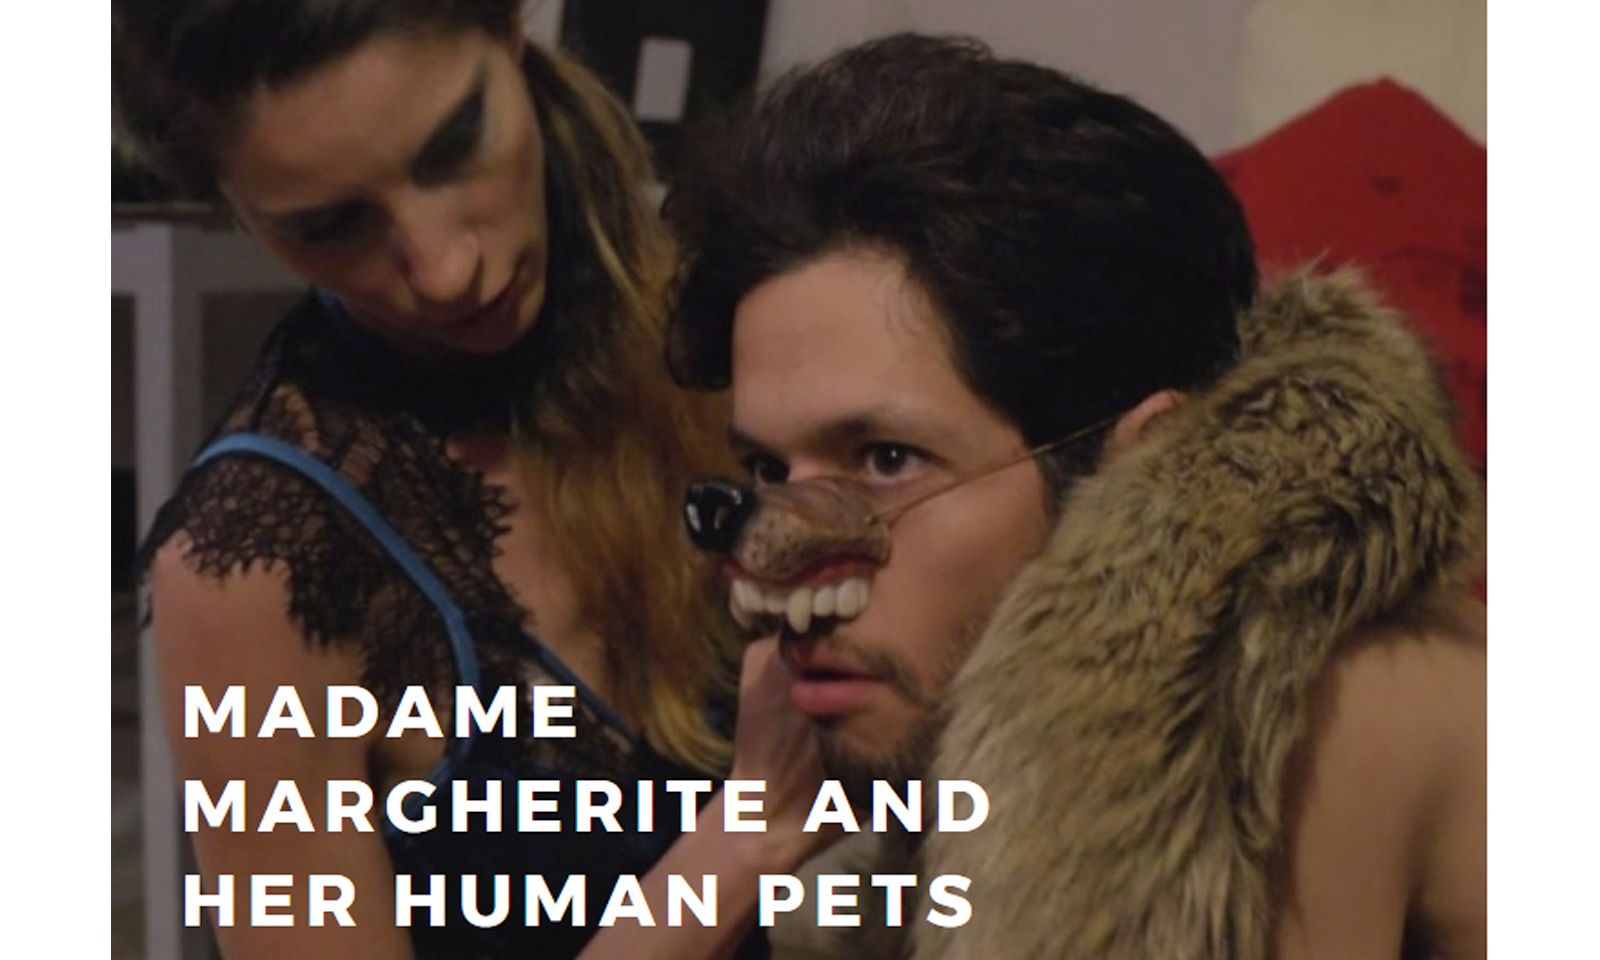 New Dominatrix Video From Harriet Sugarcookie Presents Human ‘Pet